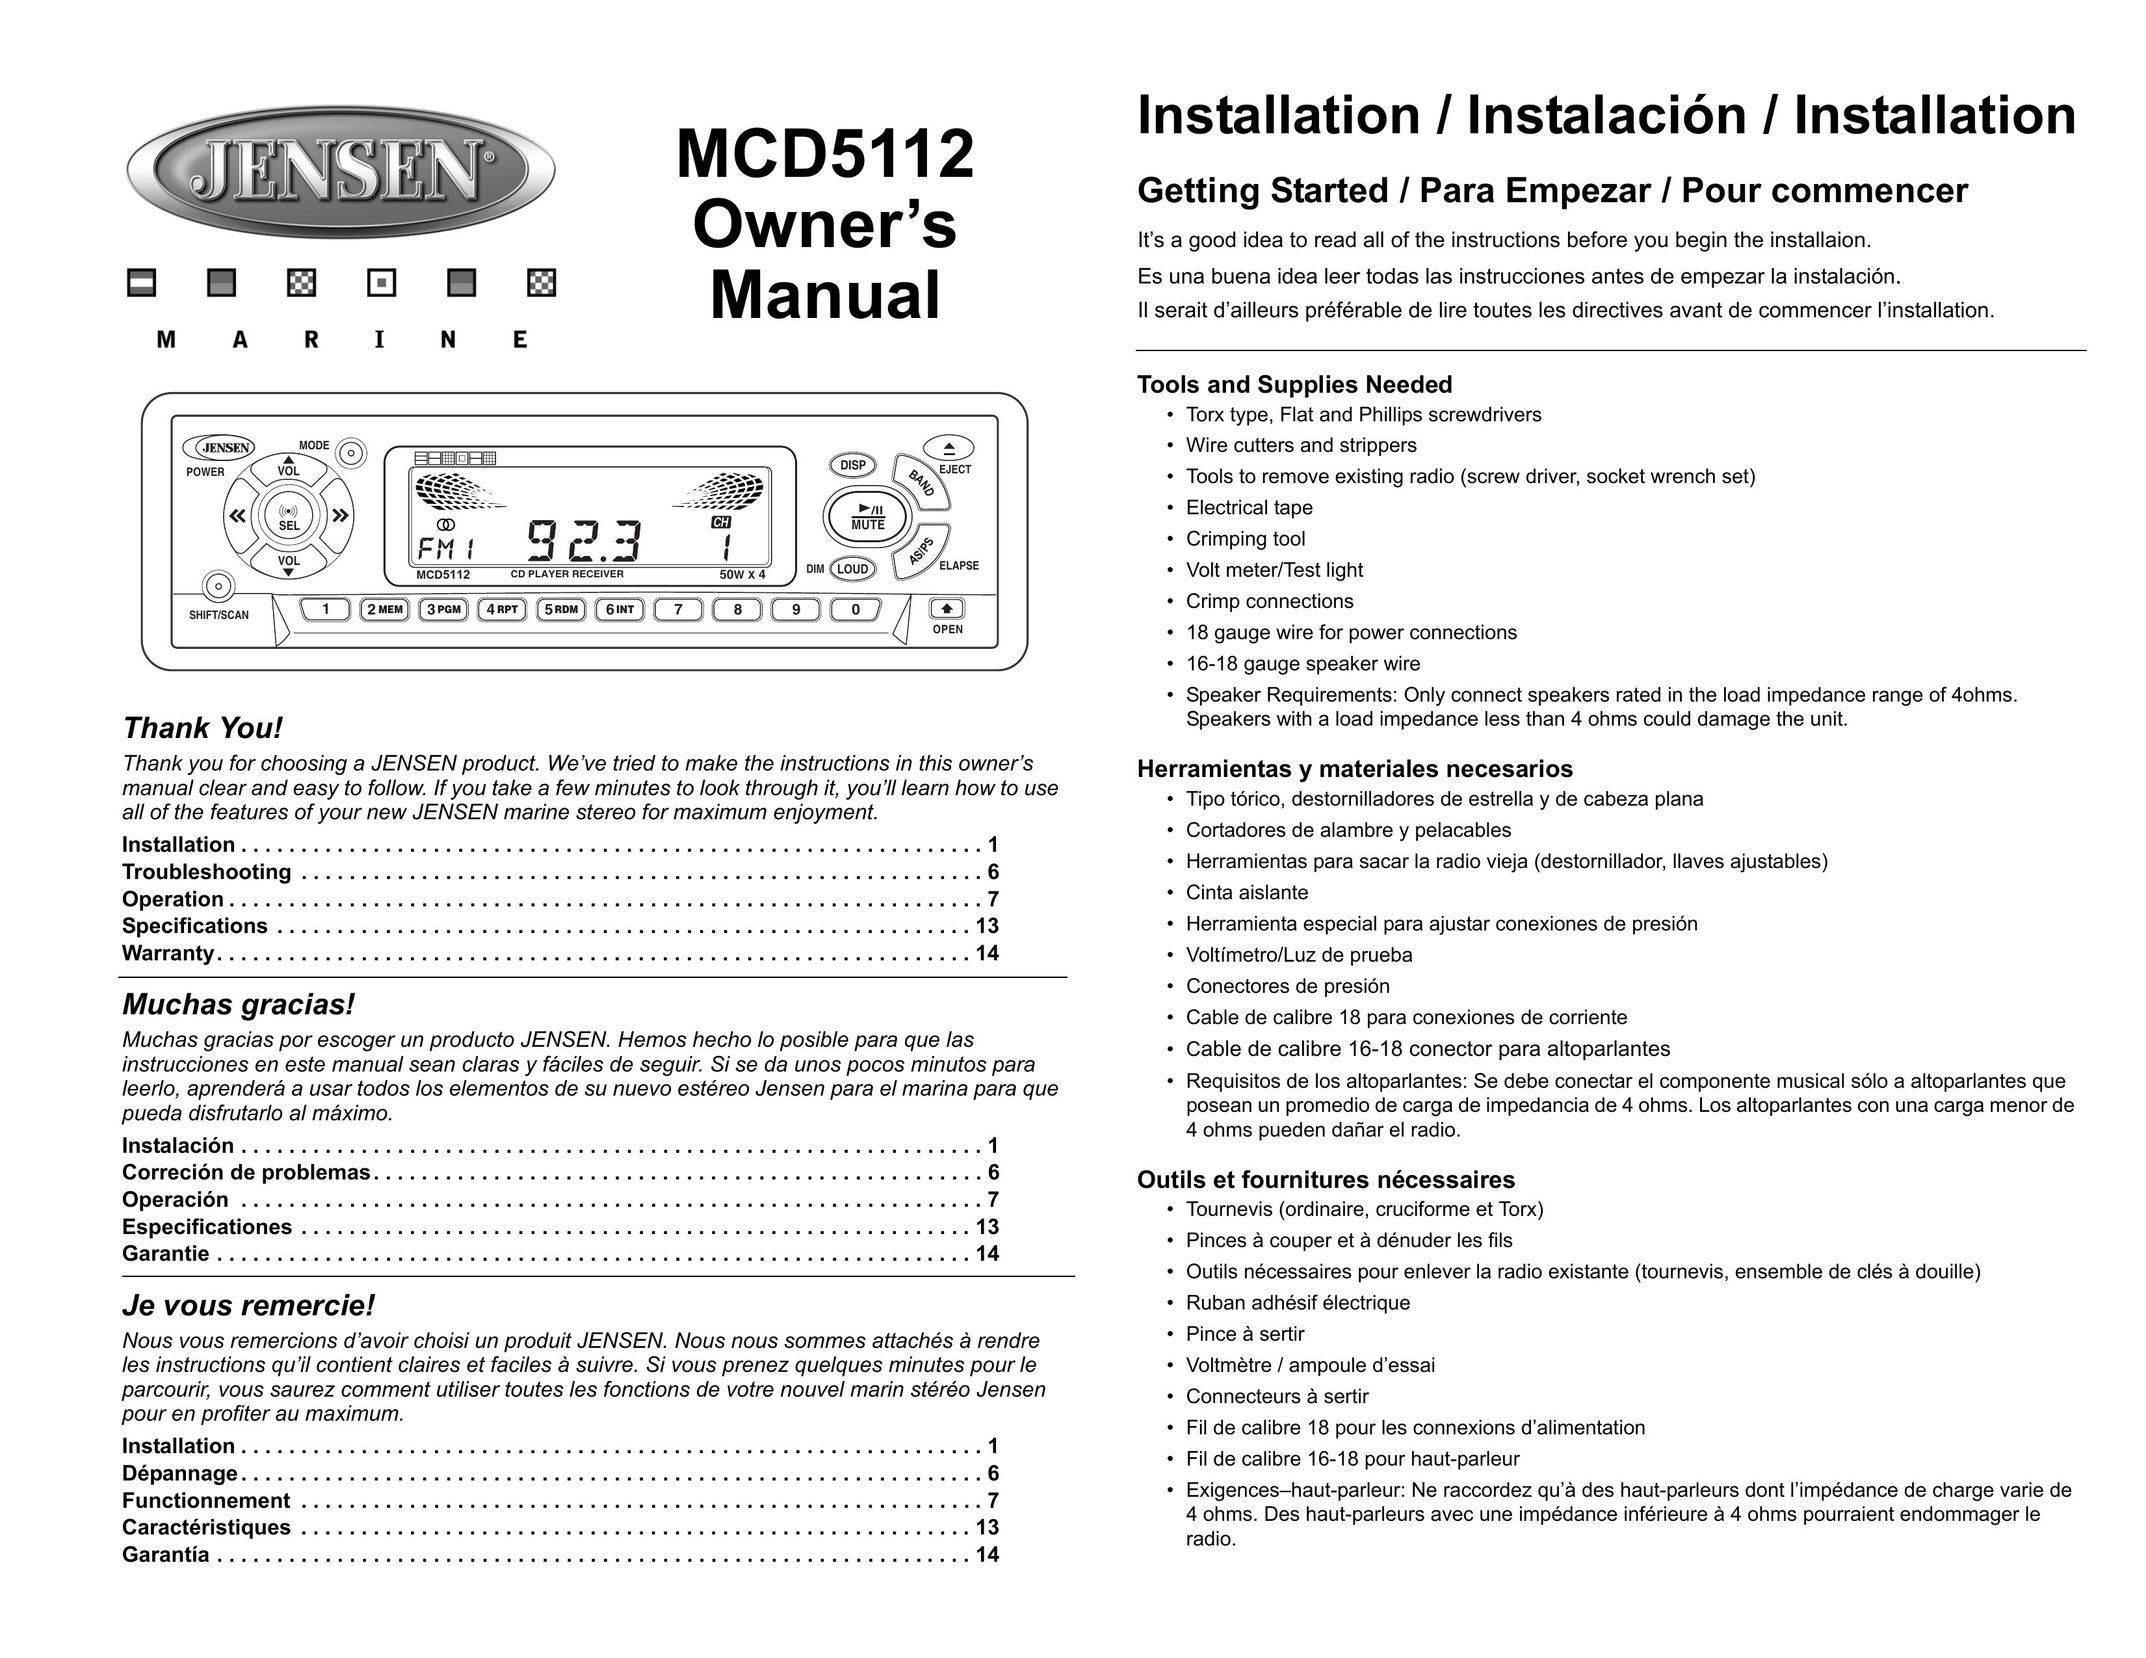 Jensen MCD5112 Car Stereo System User Manual